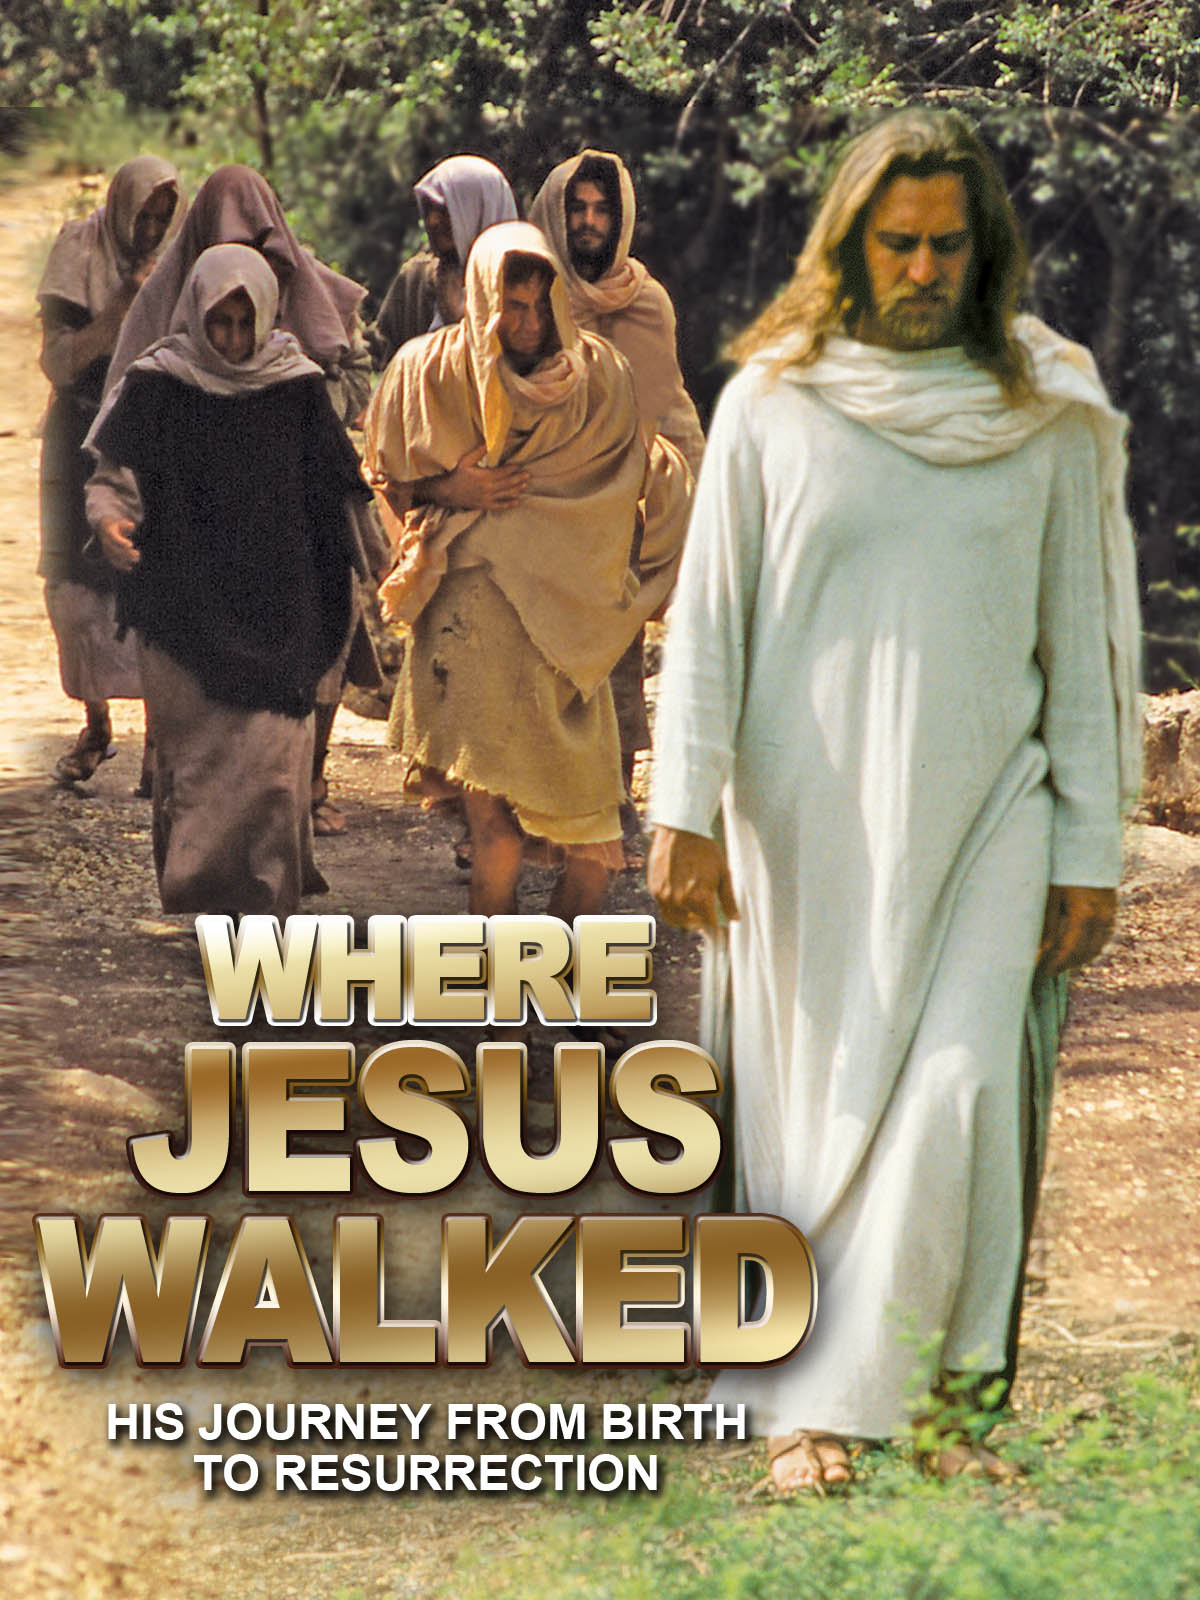 Where Jesus Walked (1995) Screenshot 5